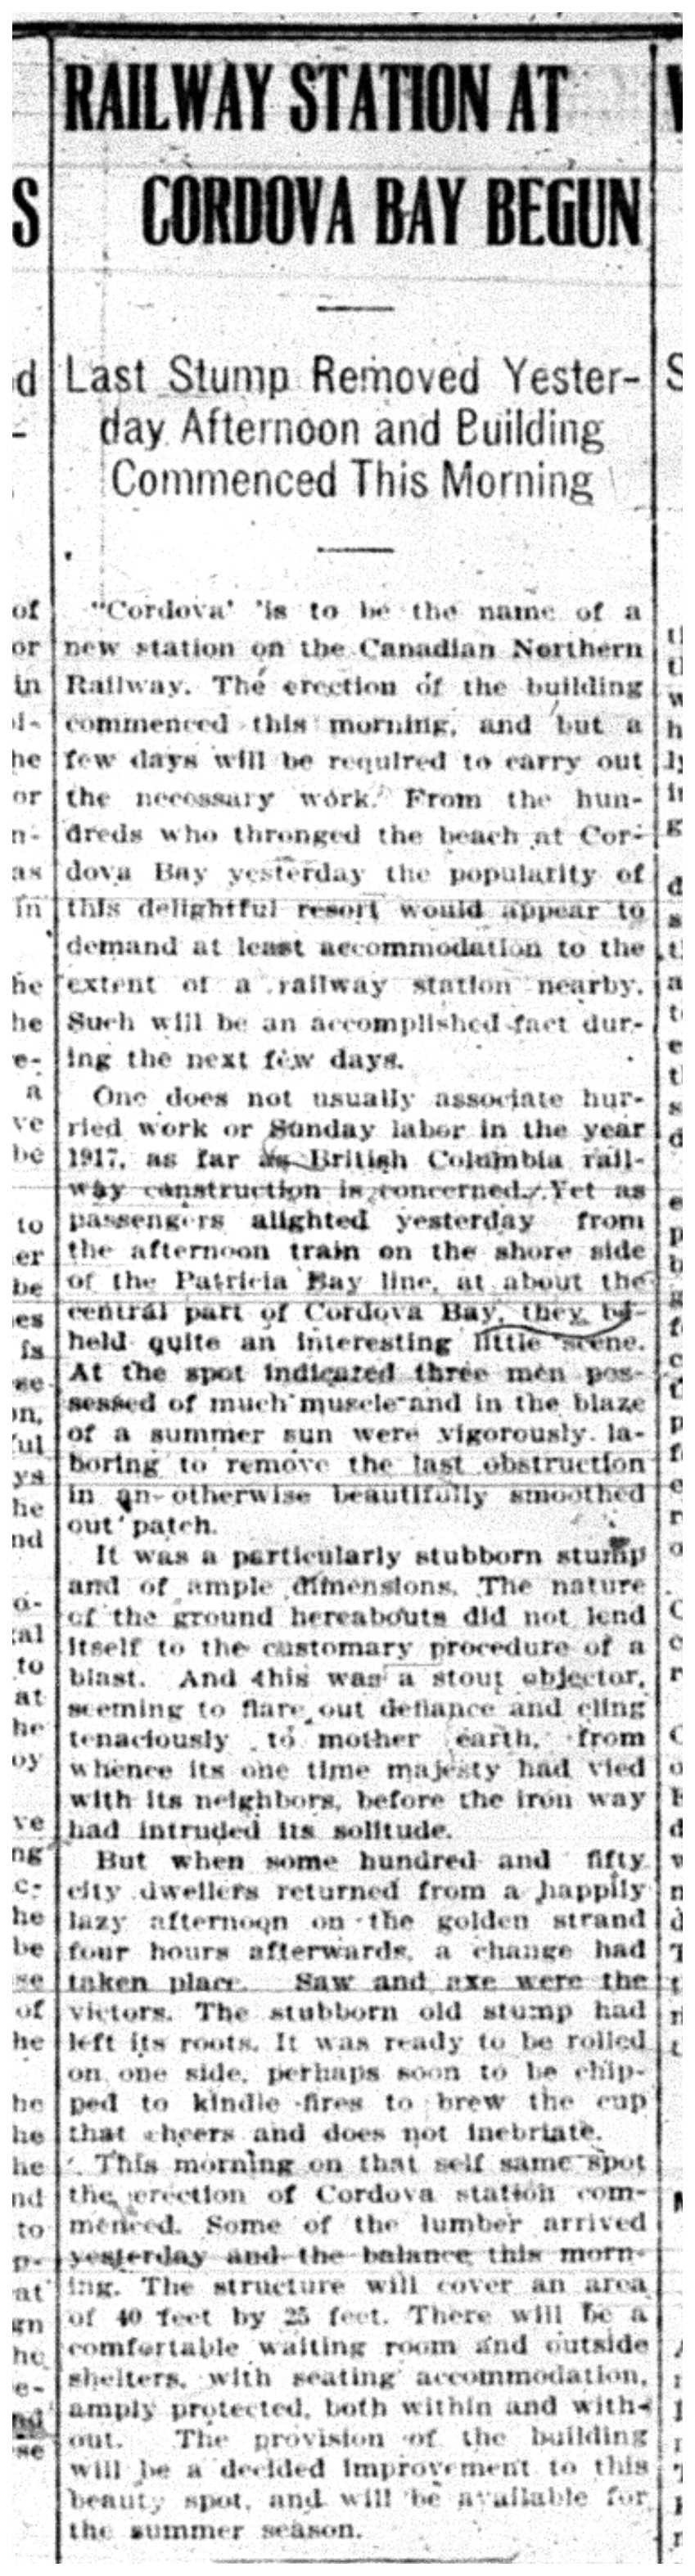 "Railway Station at Cordova Bay Begun"